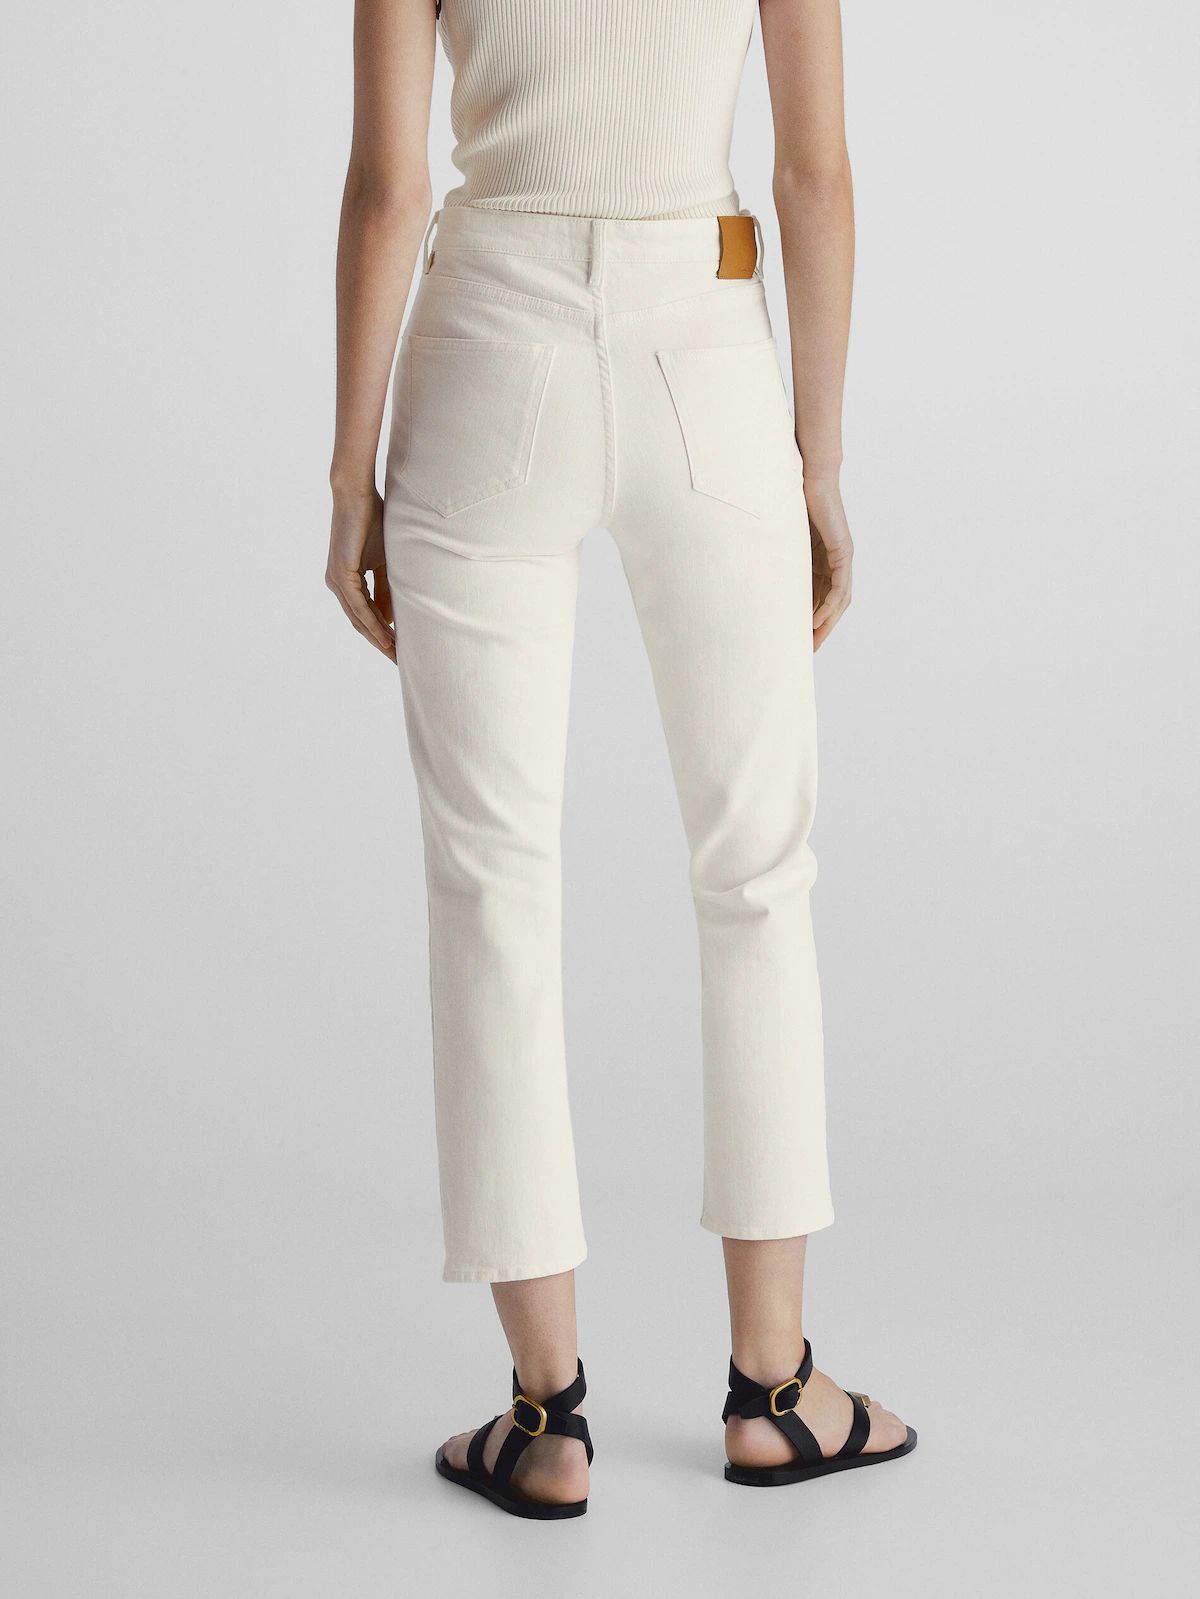 Slim-Cropped-Jeans mit halbhohem Bund | Massimo Dutti DE